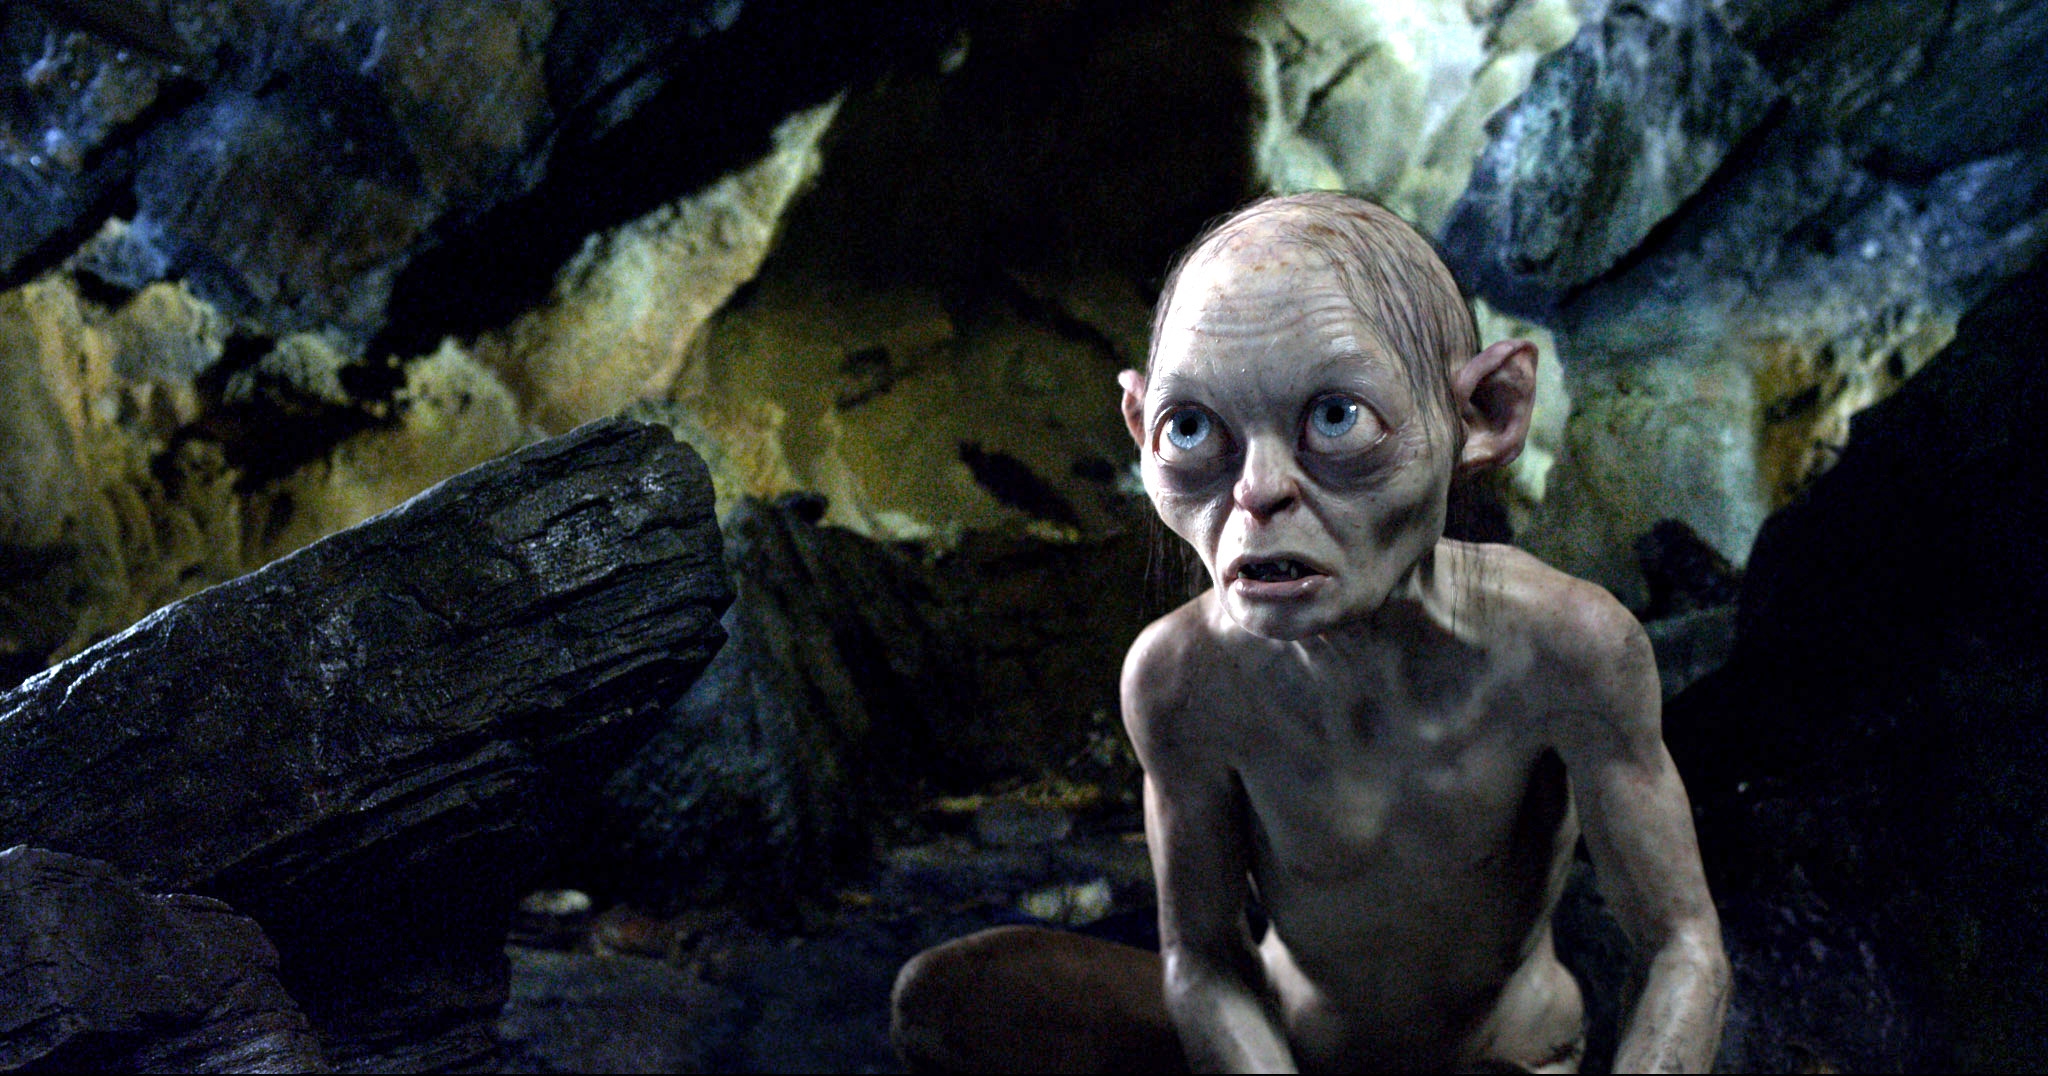 Image du film Le Hobbit : un voyage inattendu 1e636705-5f21-4537-aacb-873eb59cb7d7